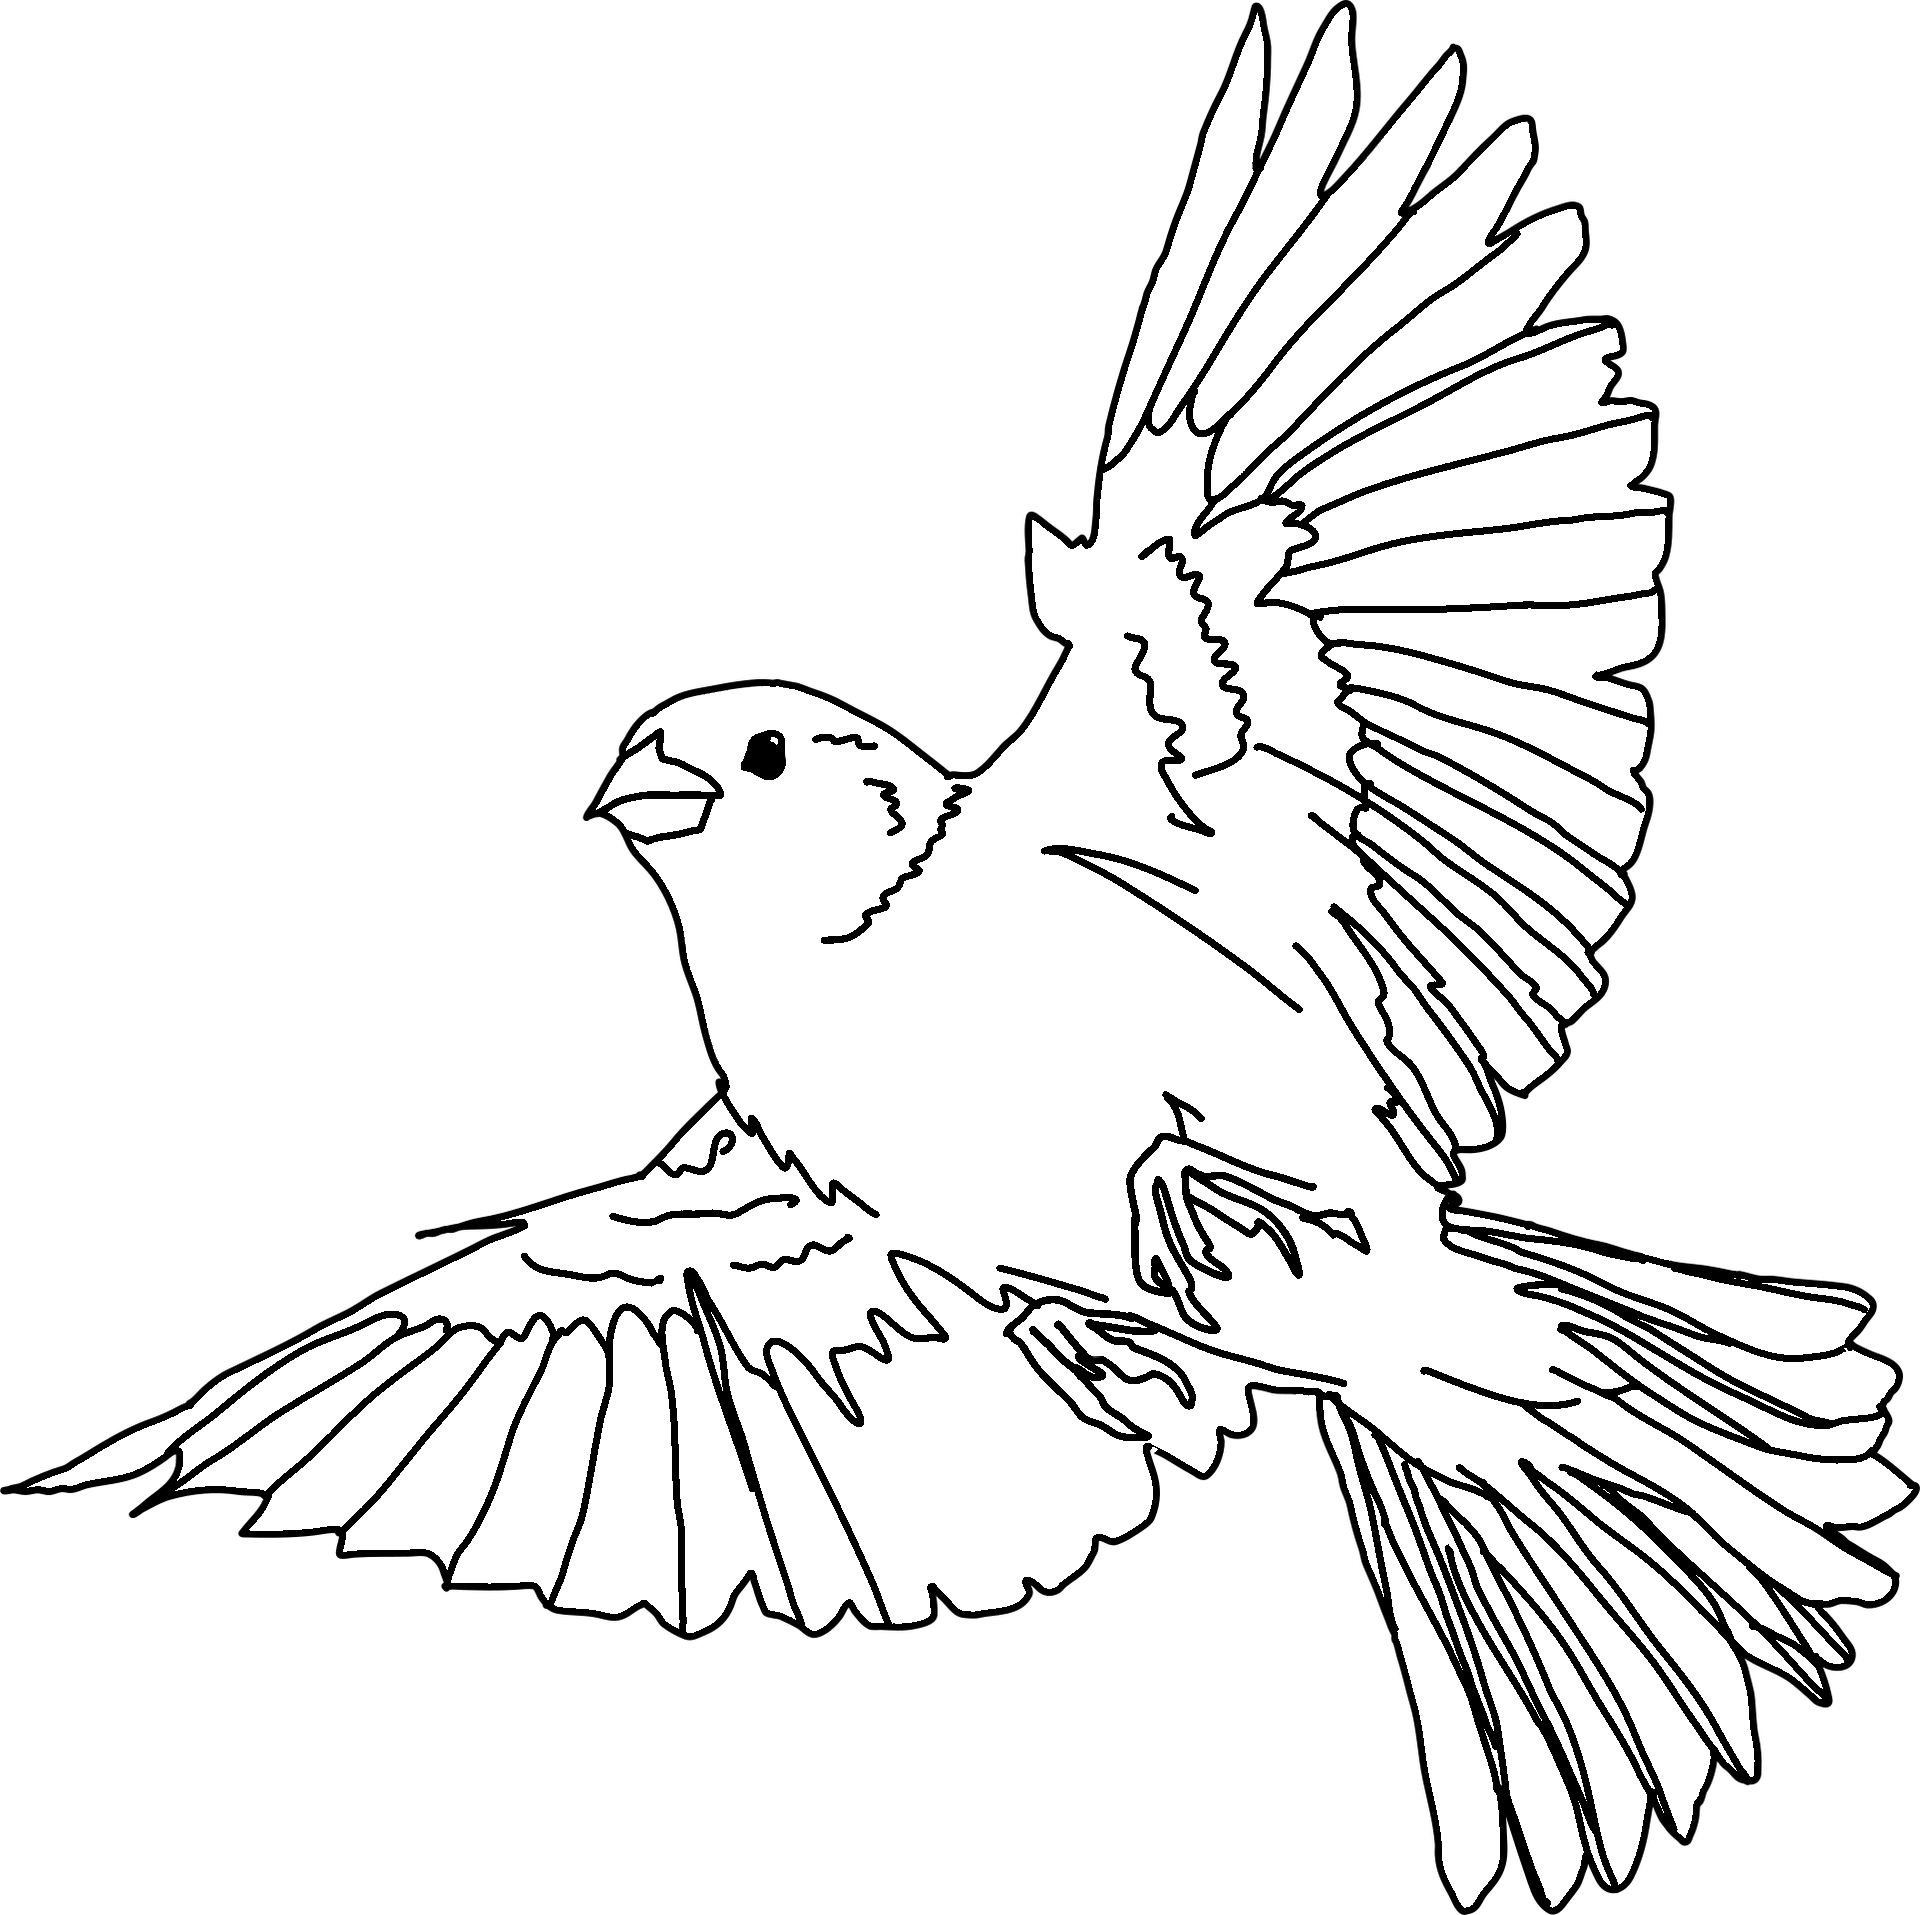 Dibujo para colorear de una paloma